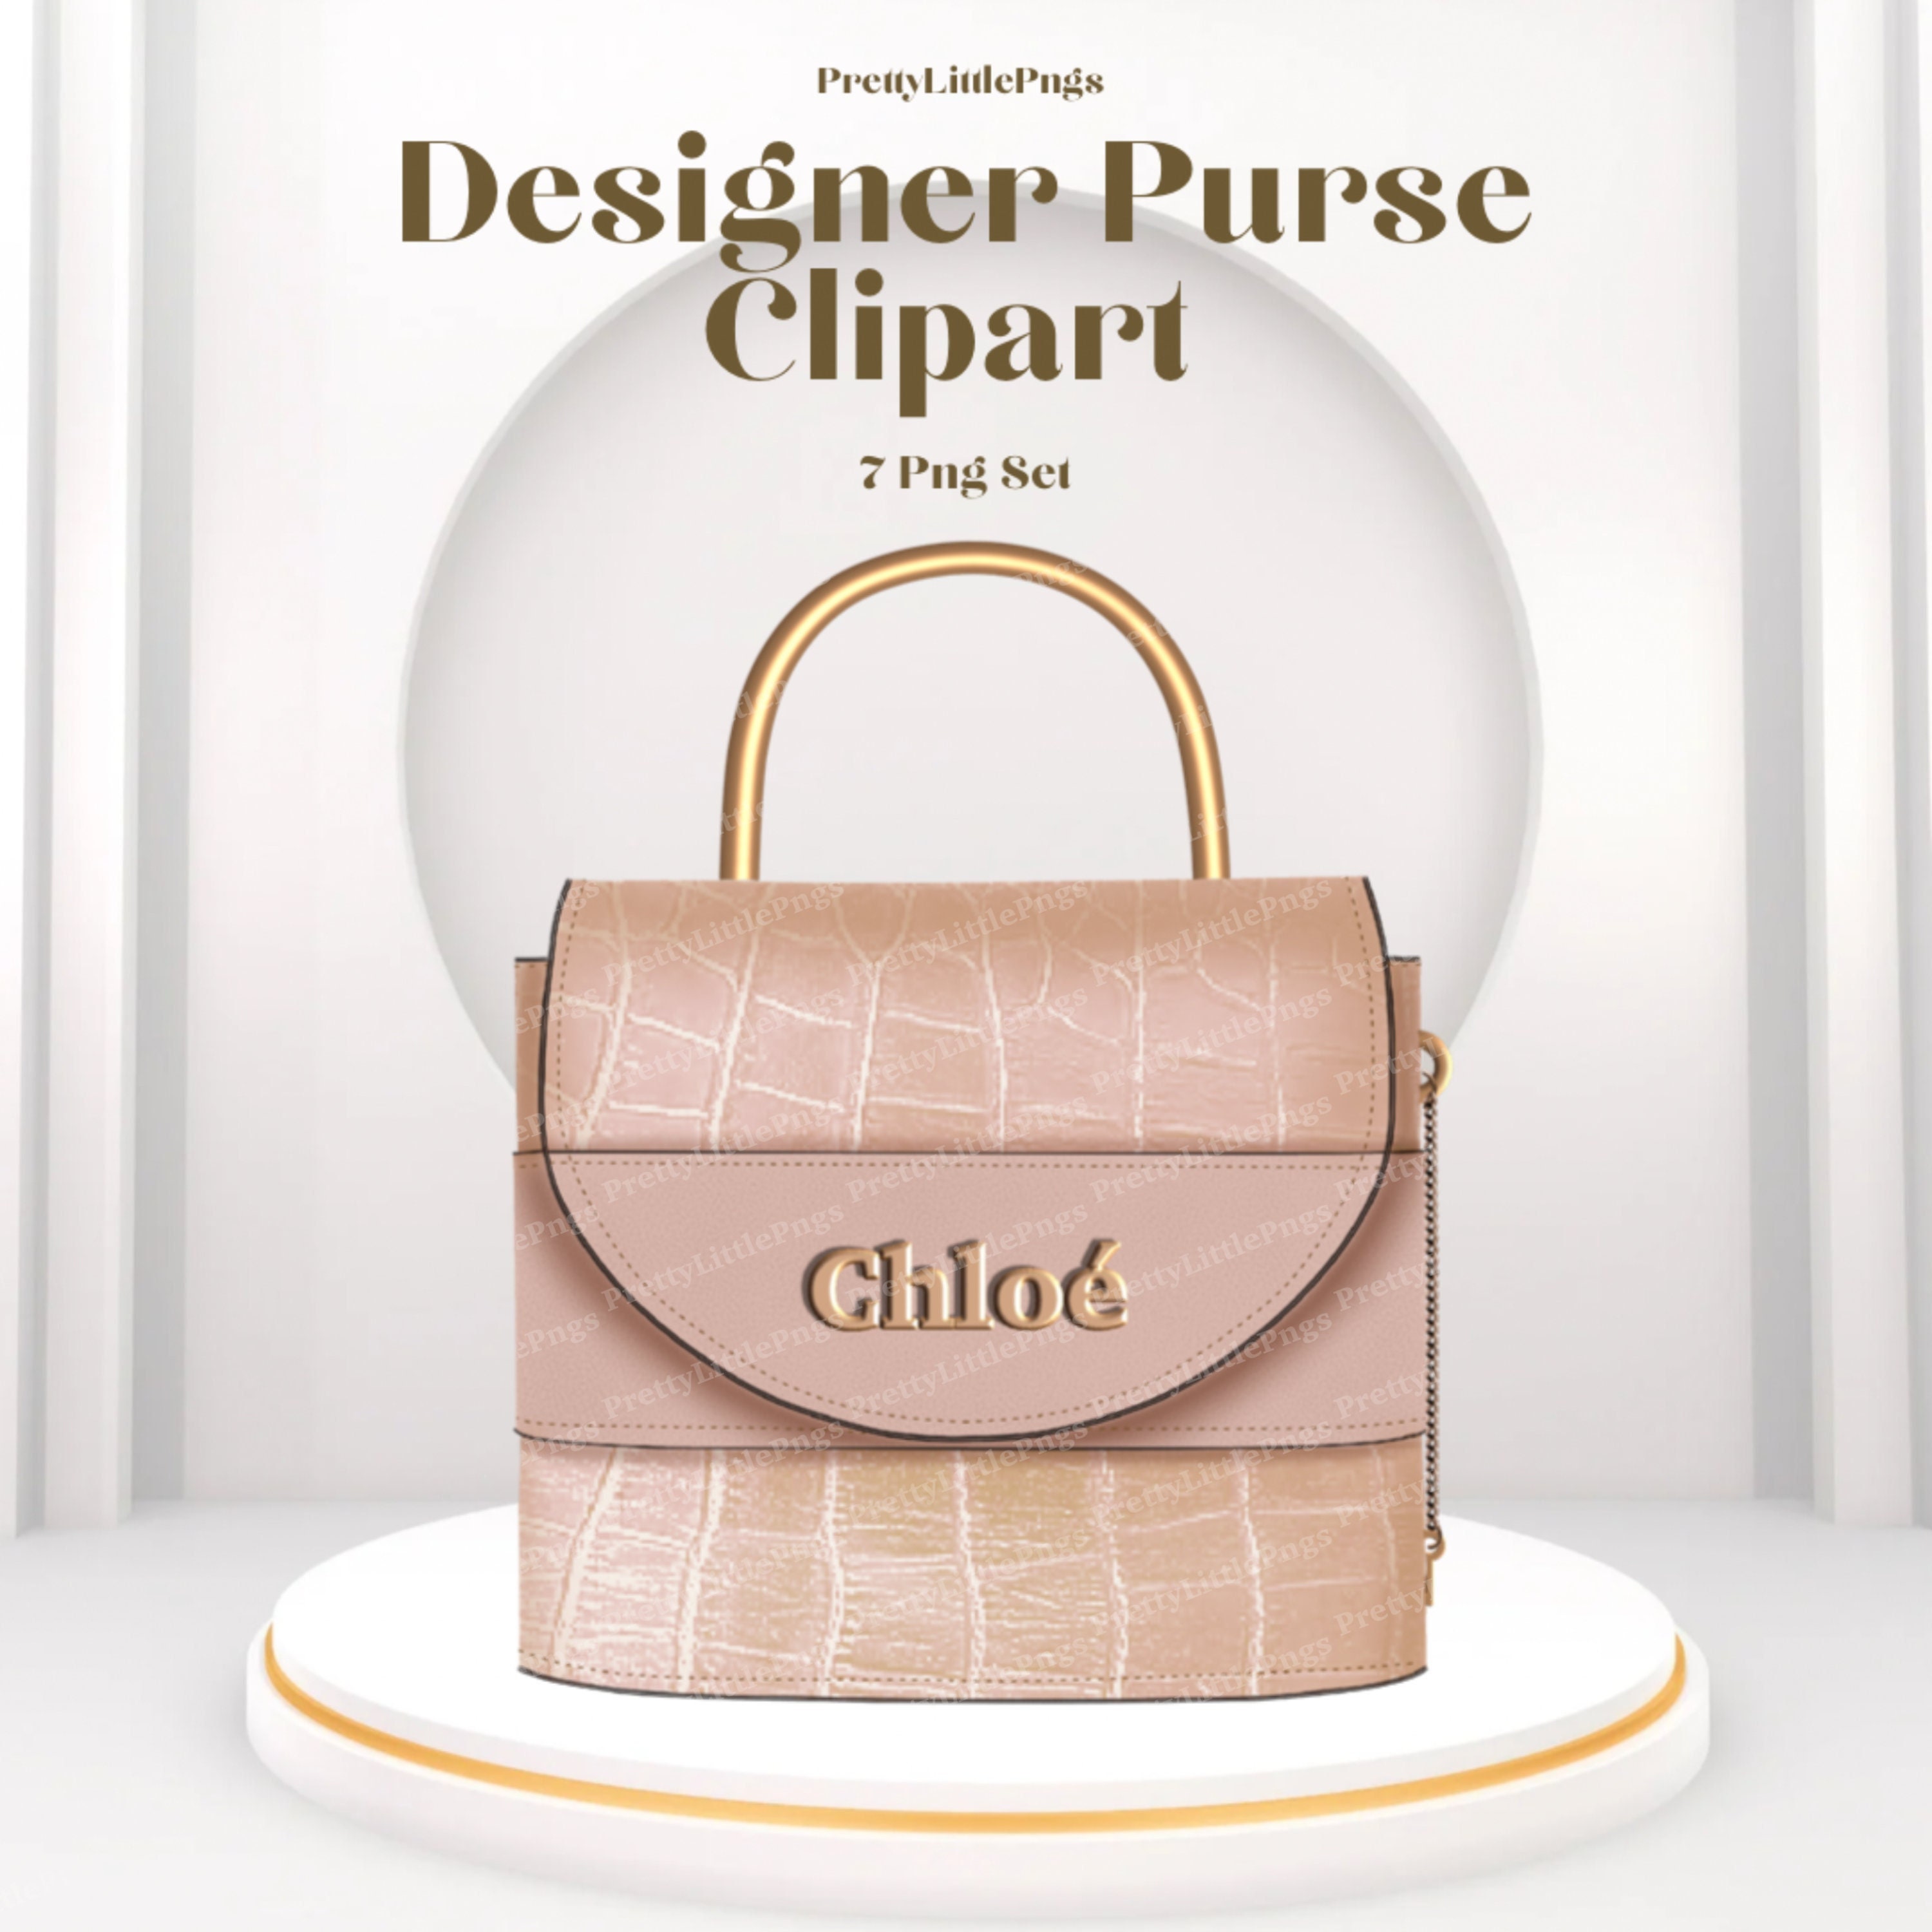 Designer Purse Clipart Purse Clipart Designer Handbag 